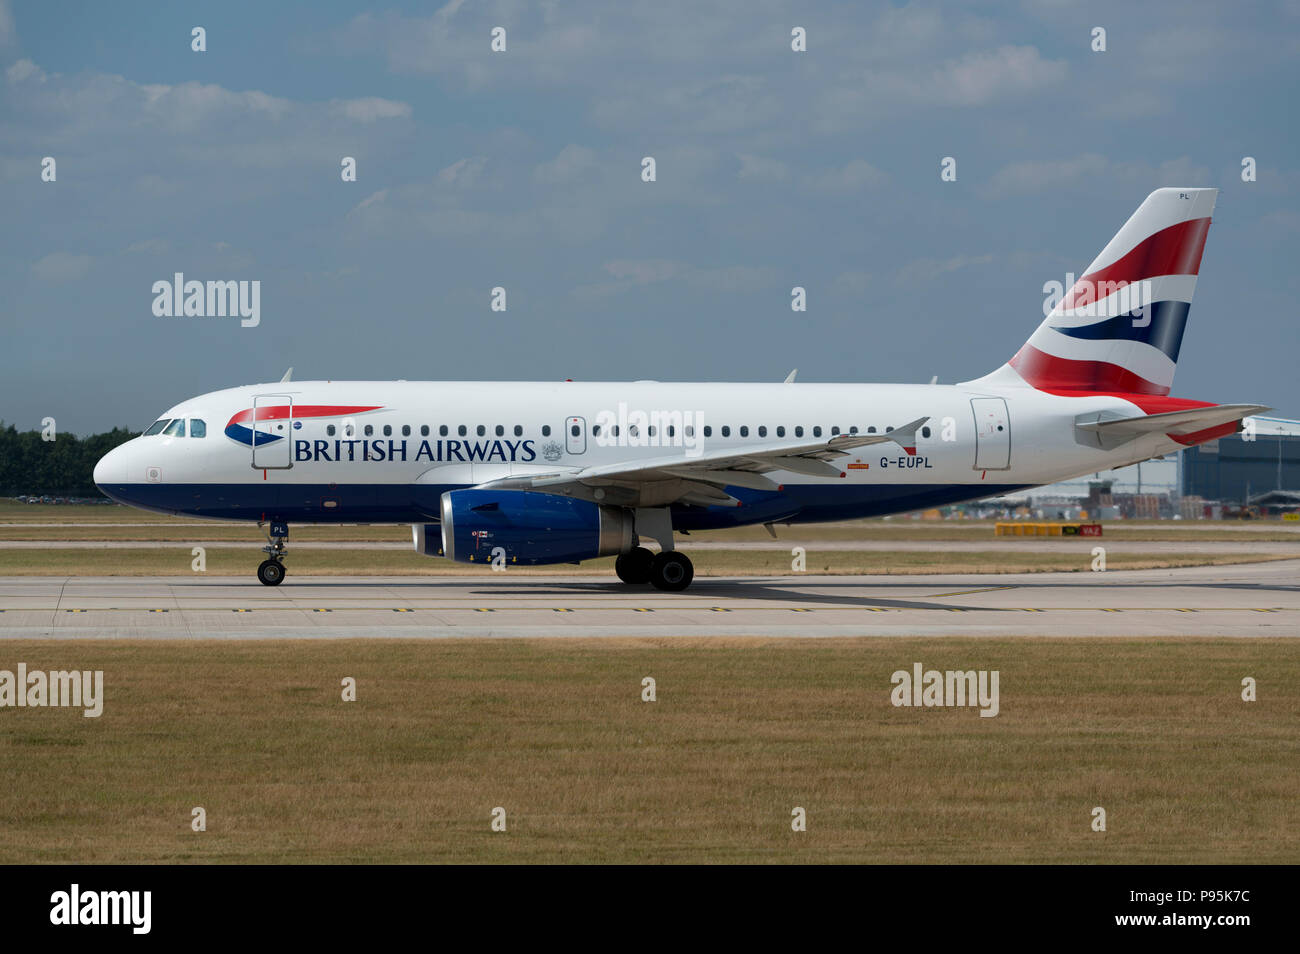 Einen British Airways A319 befindet sich auf der Start- und Landebahn am Flughafen Manchester, die sich anschickt, zum take-off. Stockfoto